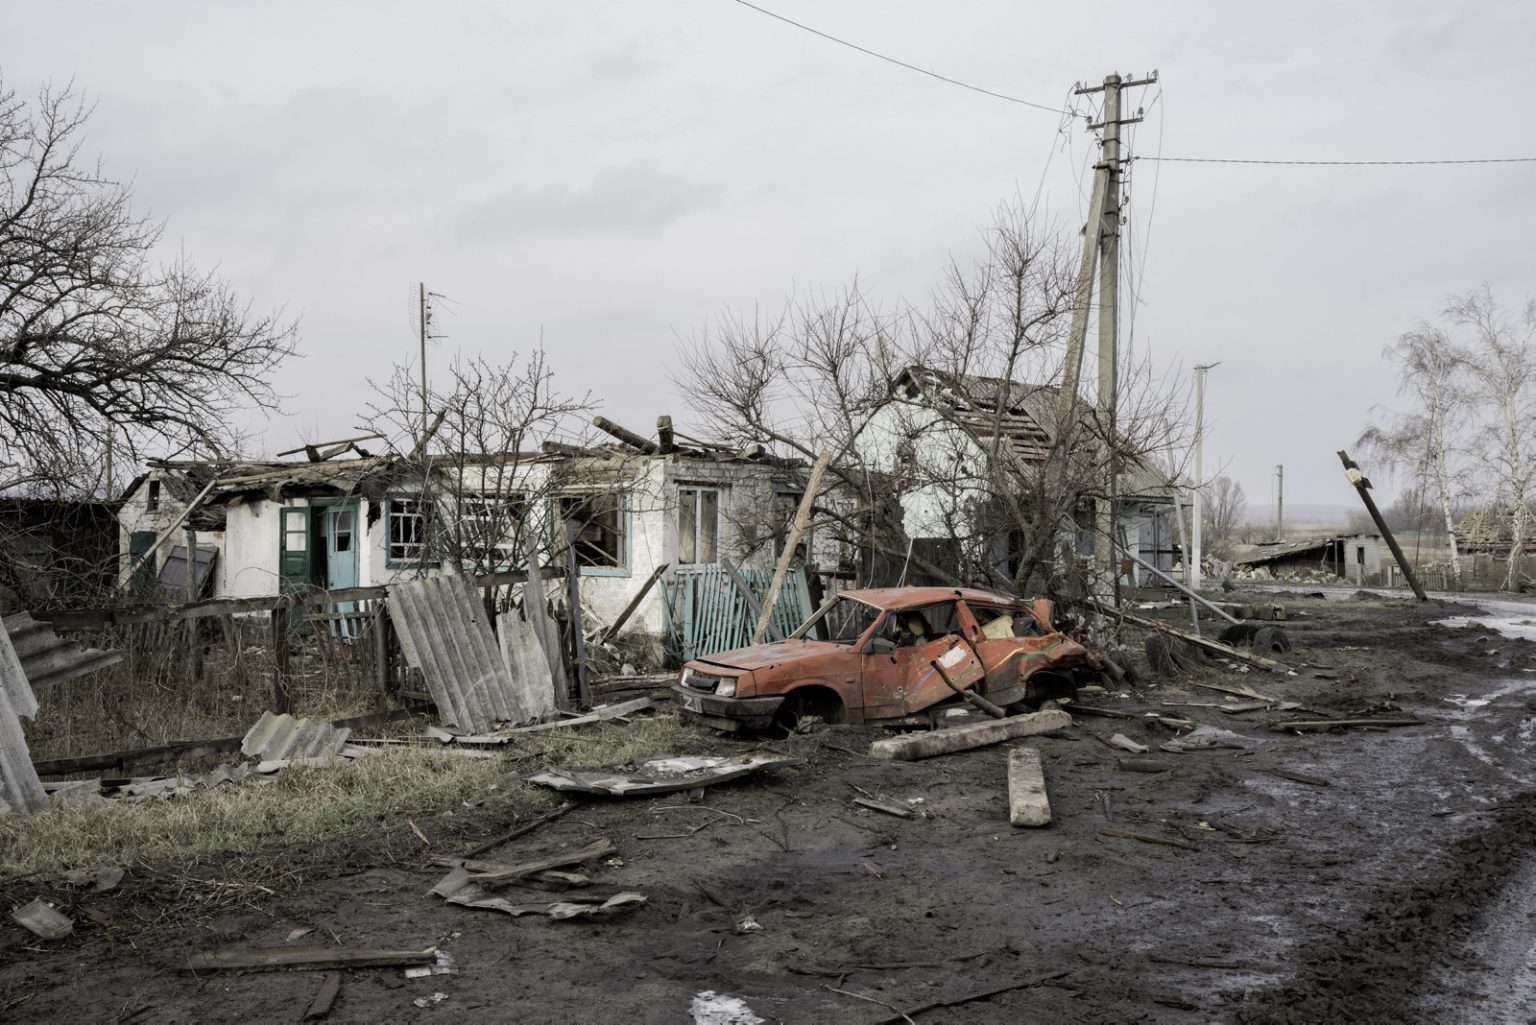 UKRAINE, Torske. January 20, 2023 - A building damaged by shelling in Torske.  ><
UCRAINA, Torske. 20 gennaio 2023 - Un edificio danneggiato dai bombardamenti a Torske.